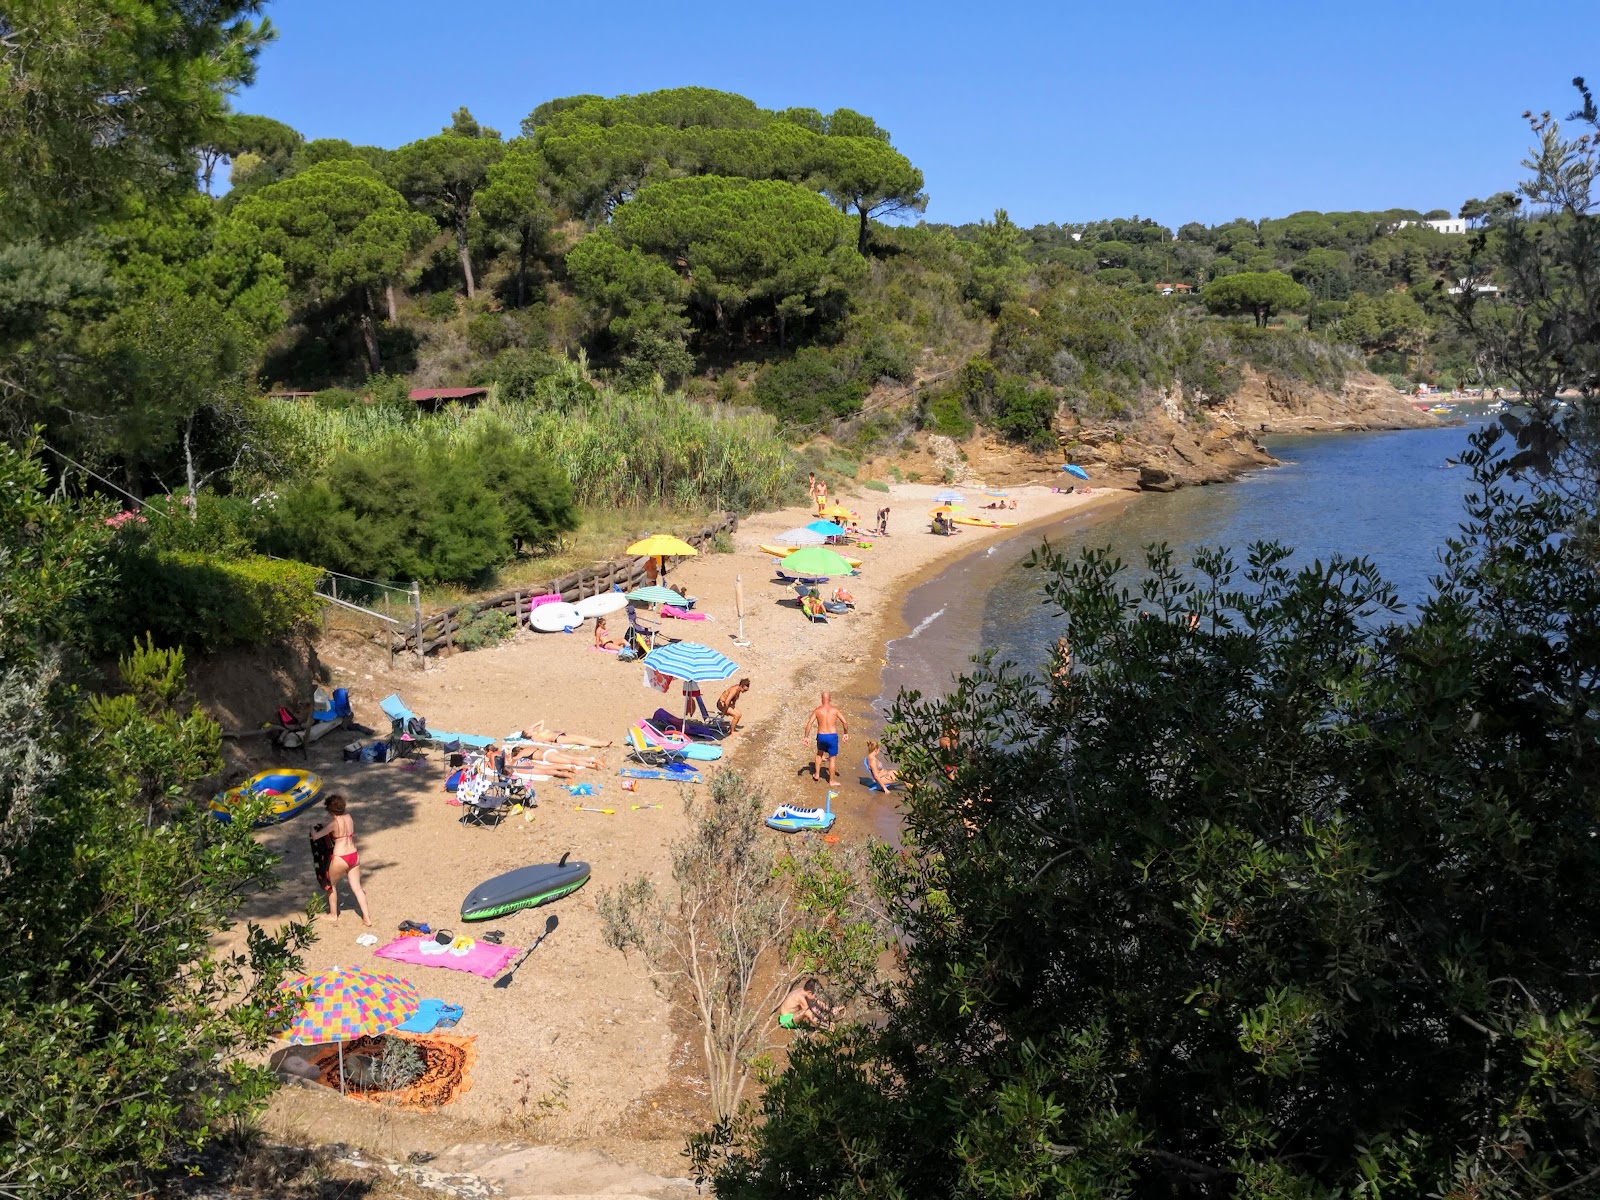 Ferrato beach'in fotoğrafı hafif ince çakıl taş yüzey ile